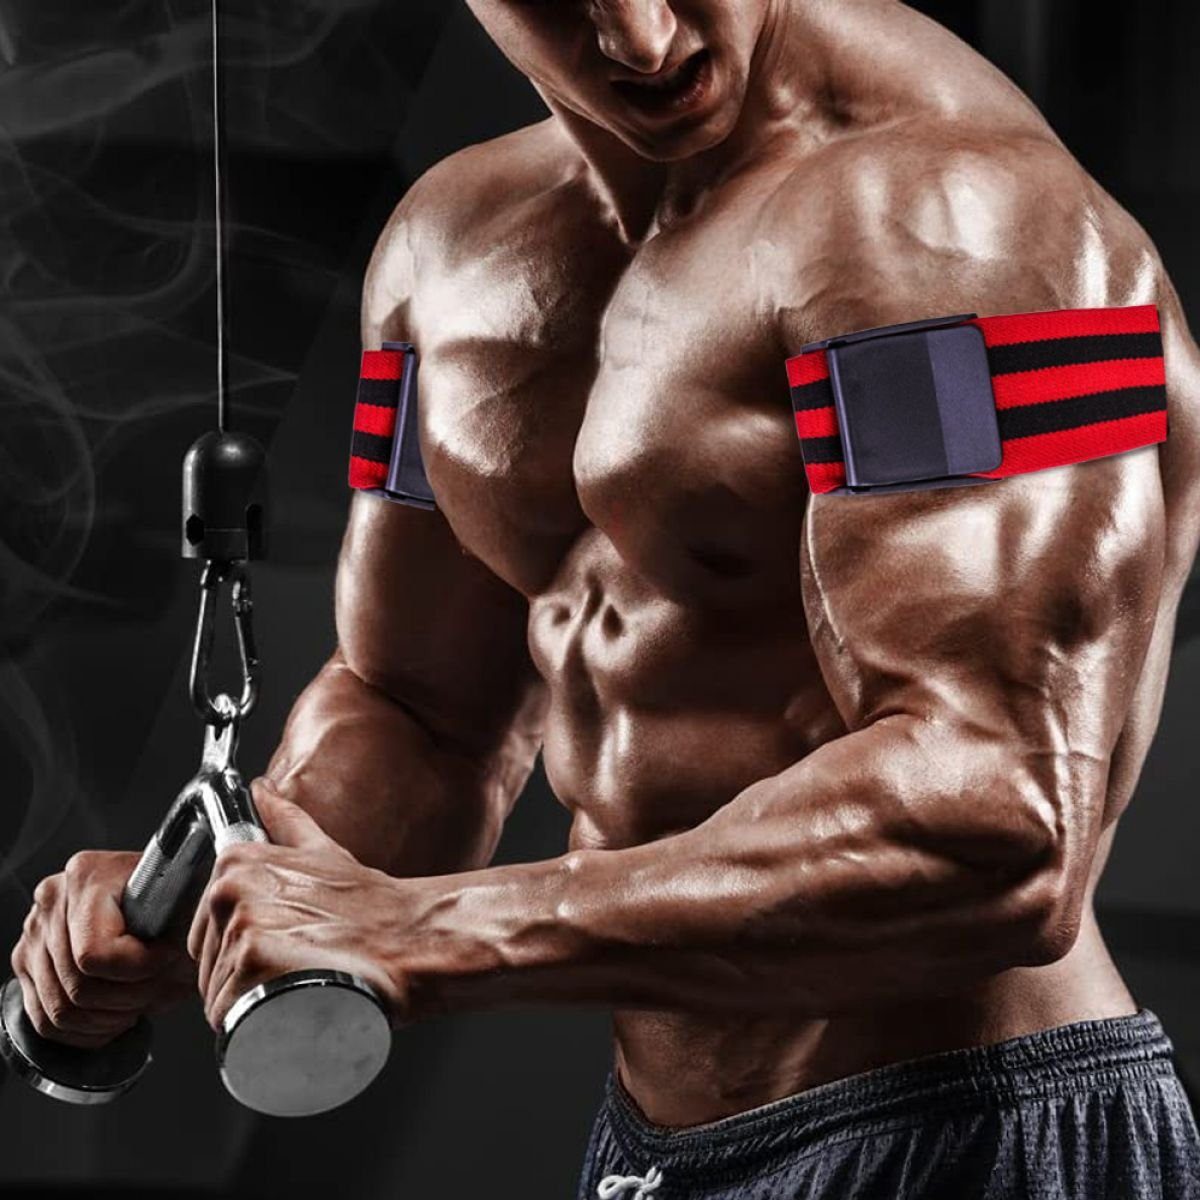 Rot Fitness Fitness-Blutfluss Jormftte Bodybuilding Trainingsband für Beschränkung Band